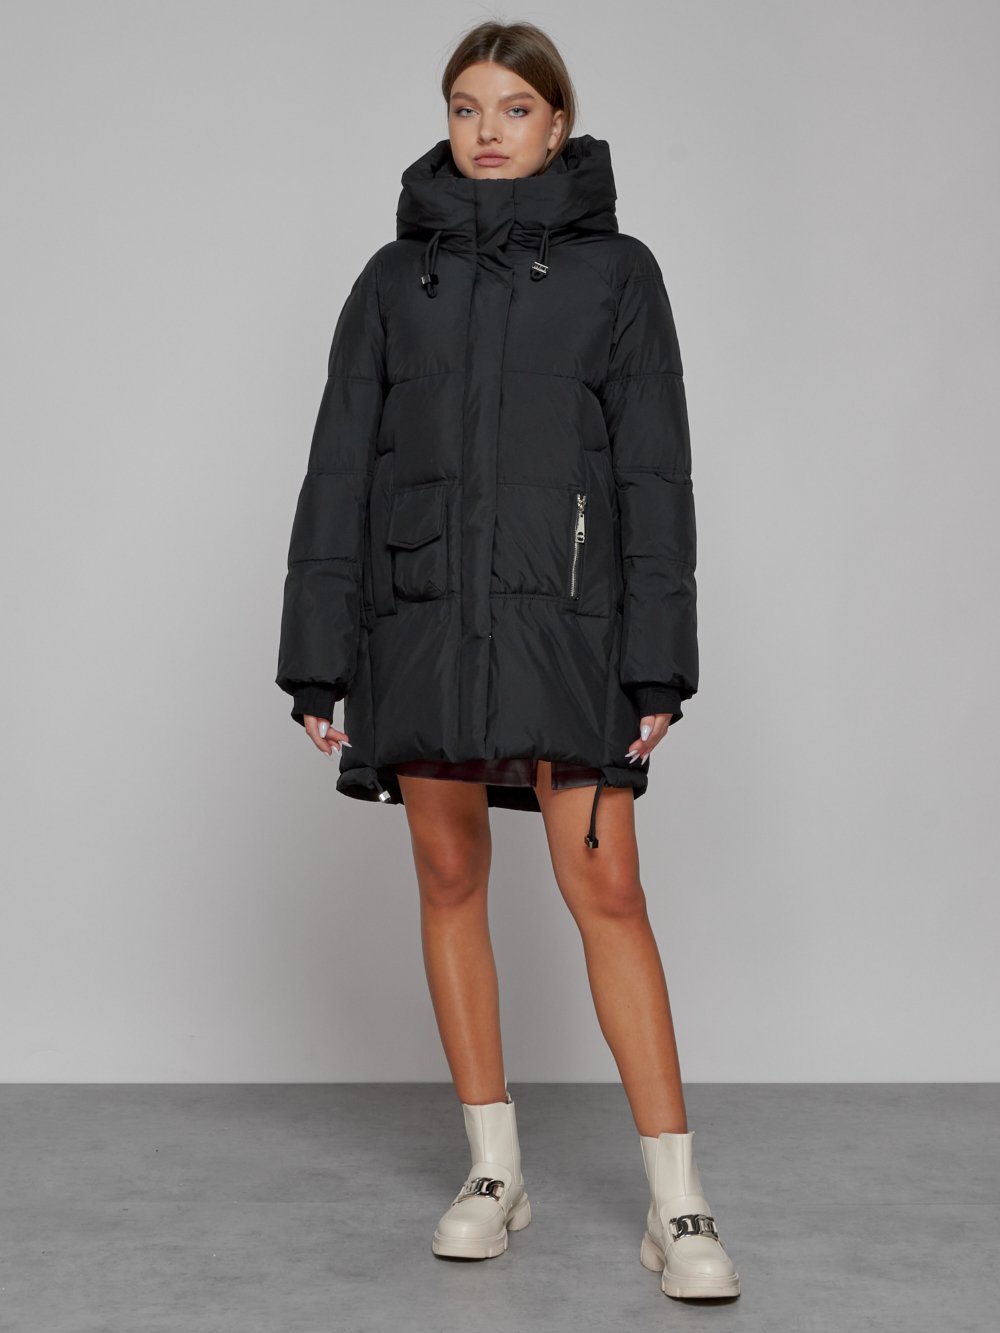 Купить оптом Зимняя женская куртка модная с капюшоном черного цвета 51122Ch в Екатеринбурге